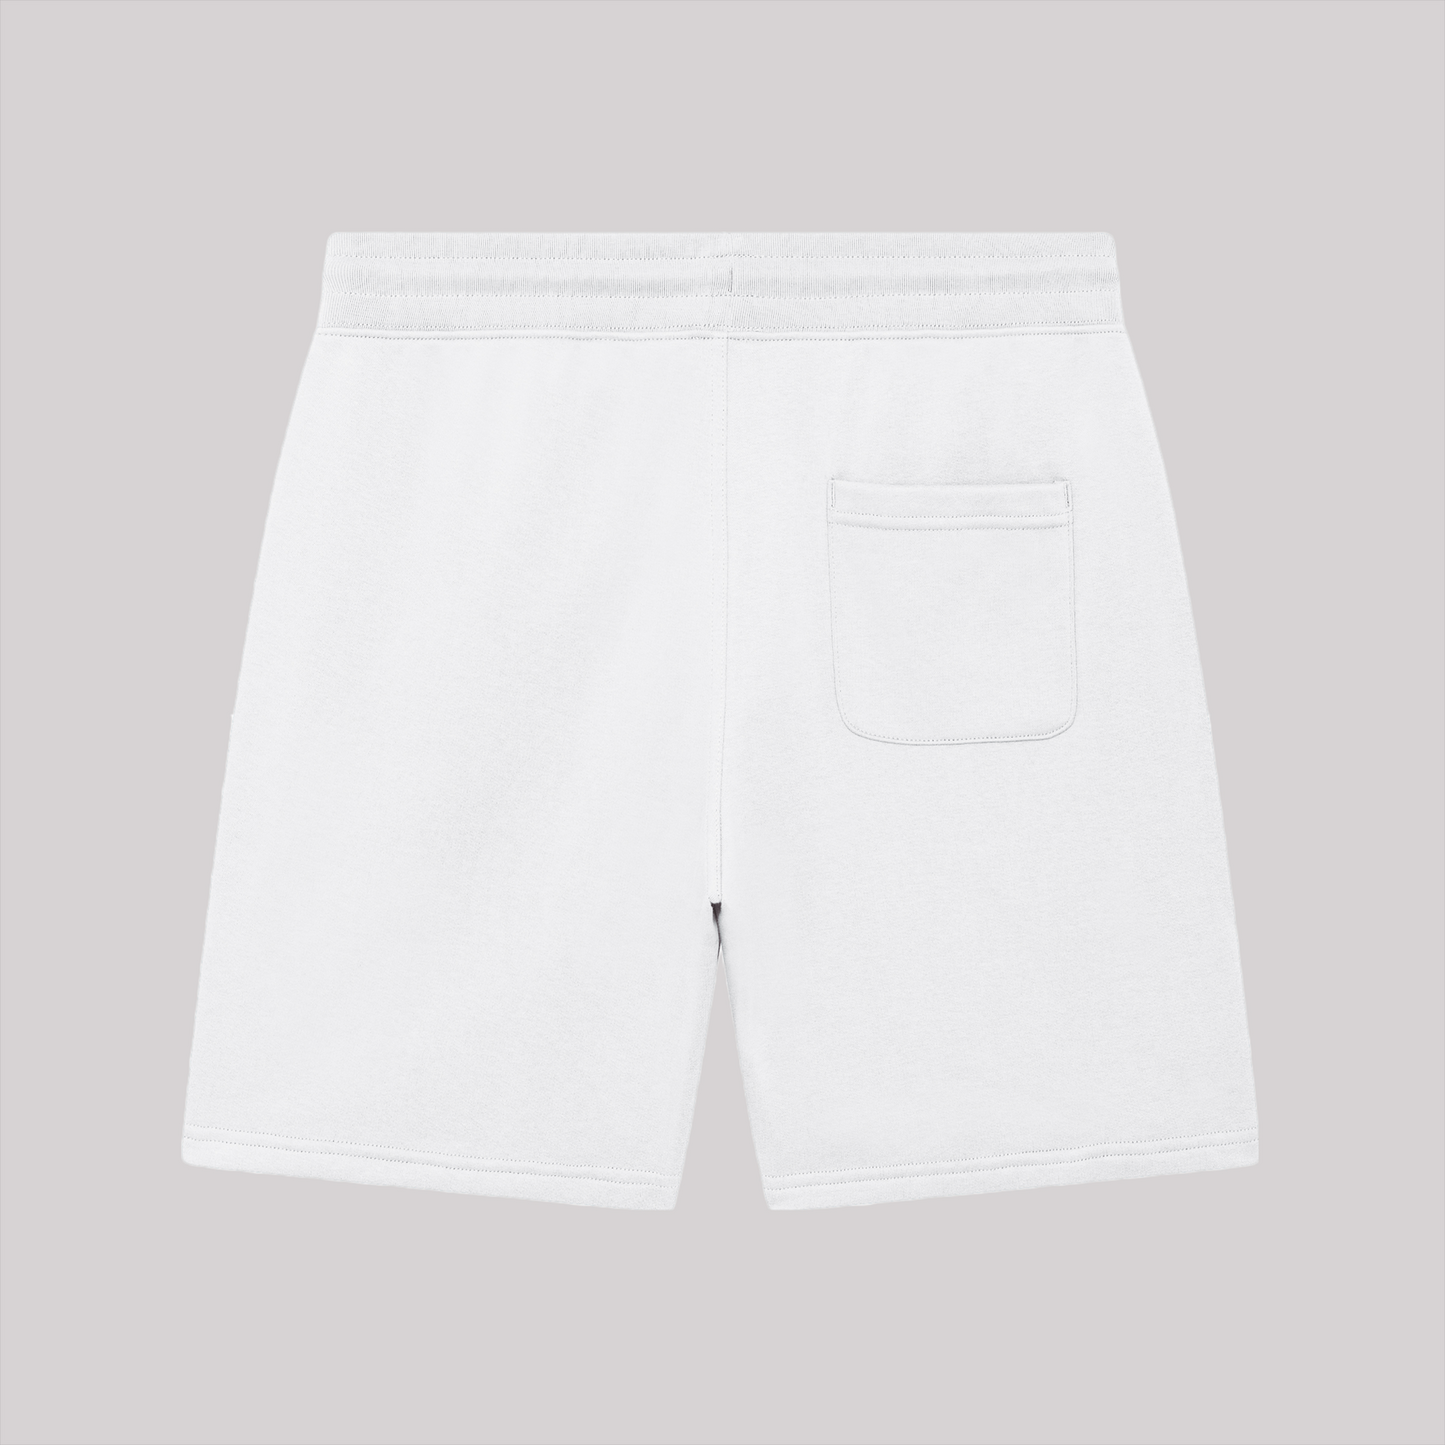 Luv Club 1989 Shorts (White)